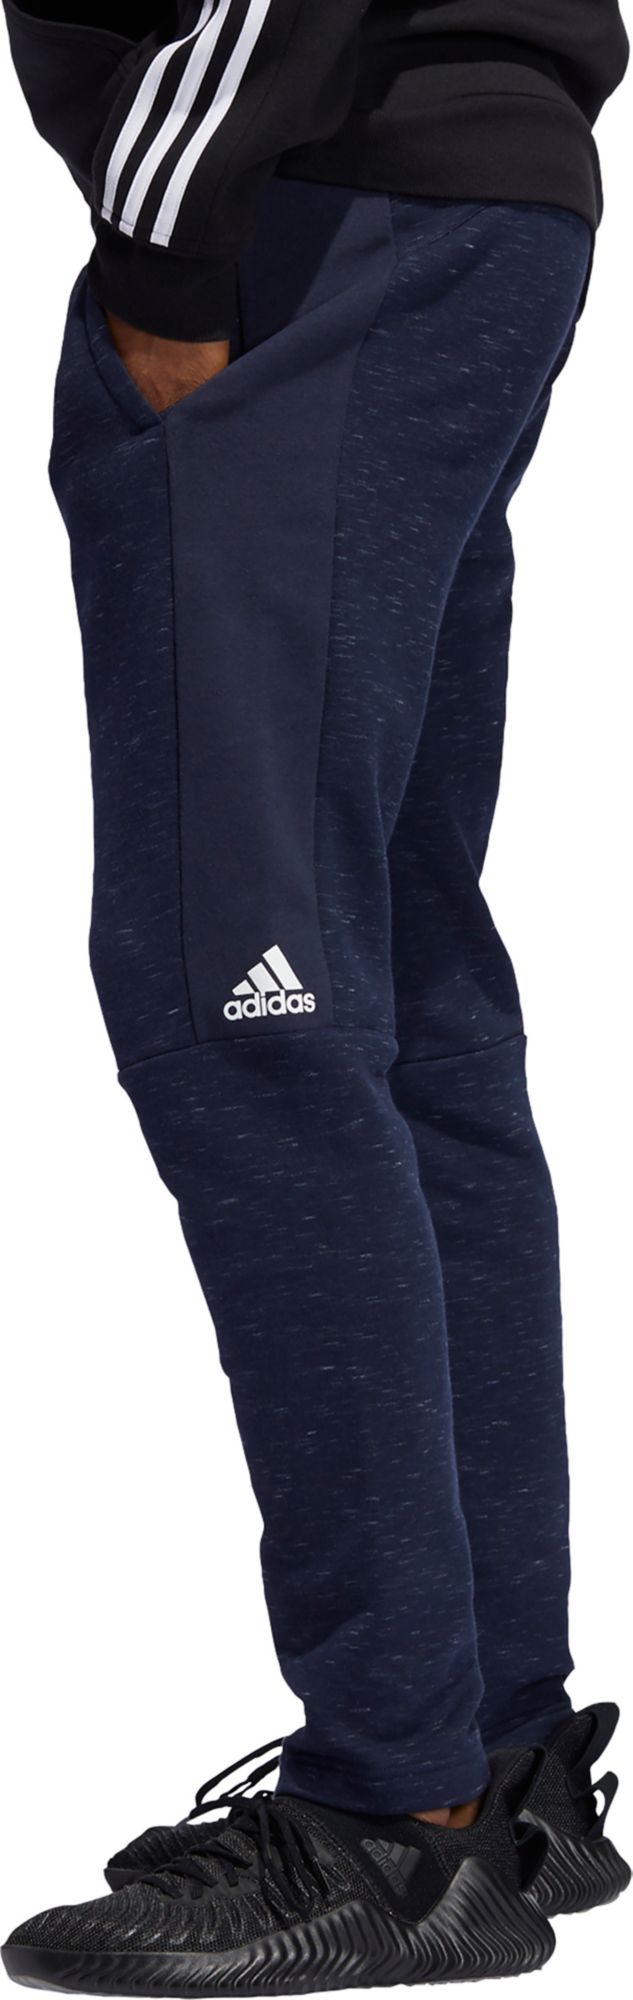 adidas post game fleece pants